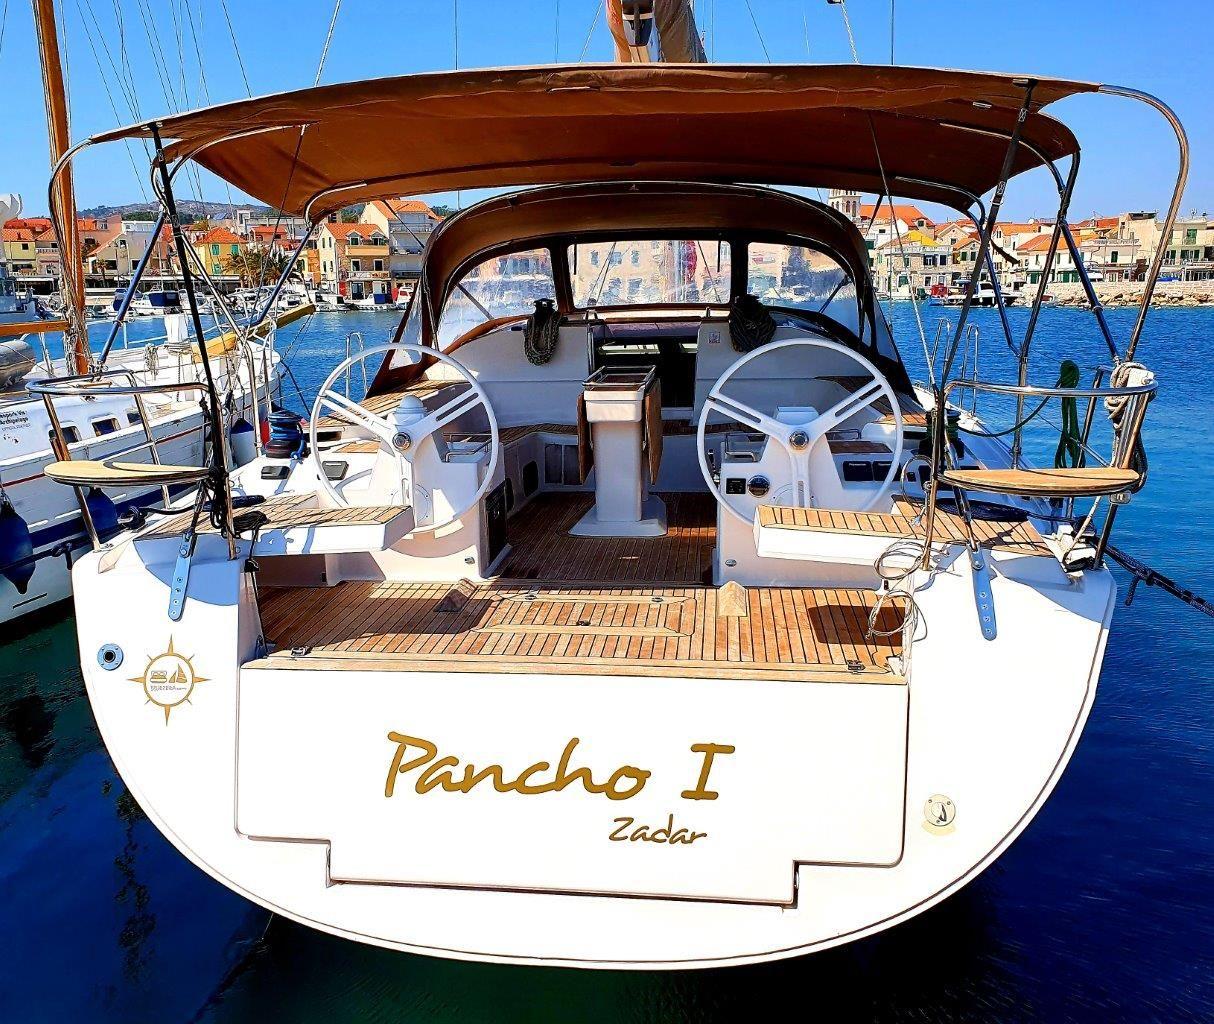 Pancho I